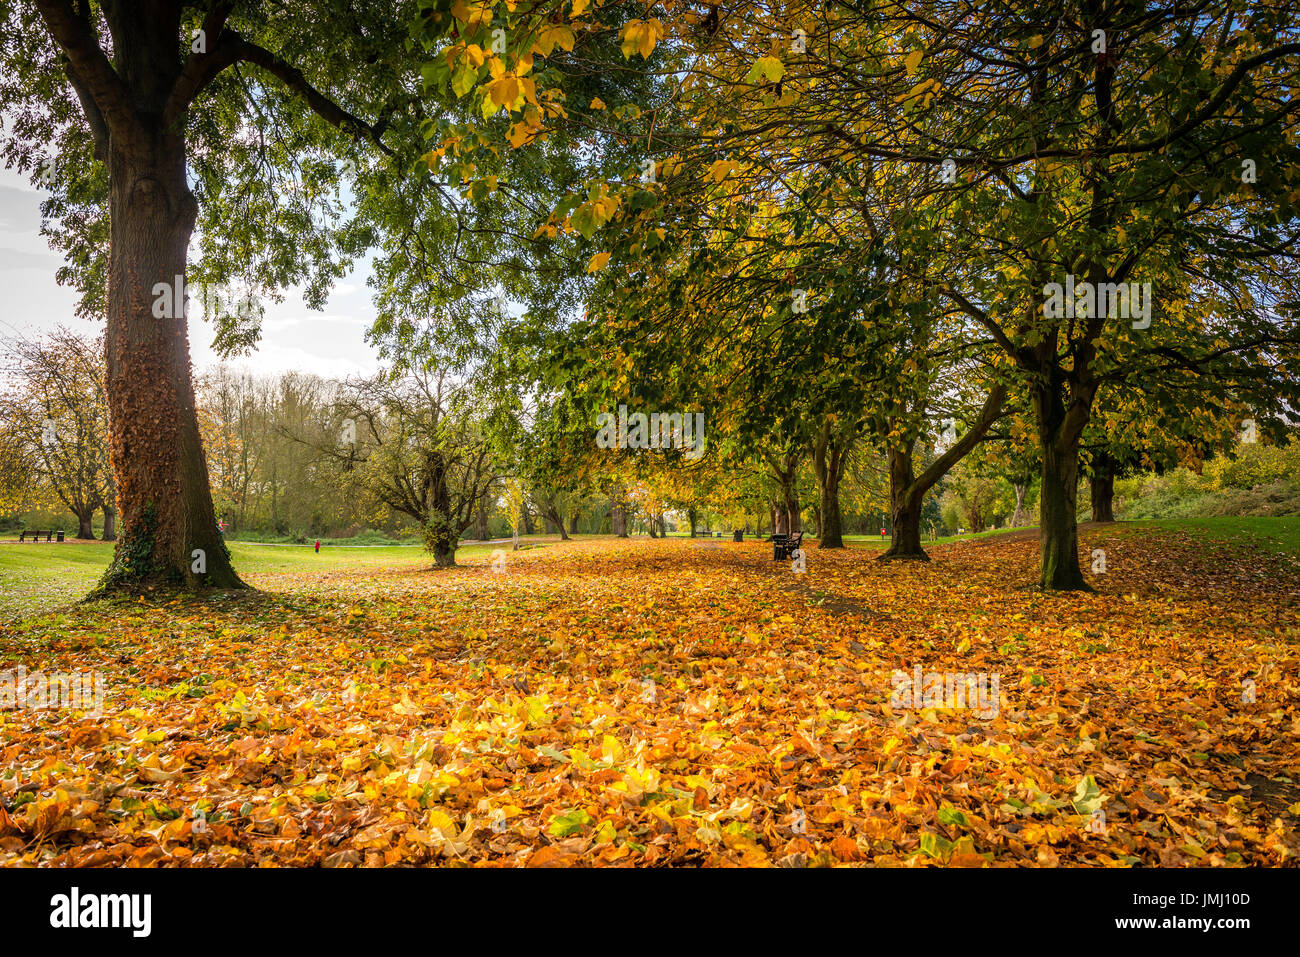 Dorate naturali sfumature e colori dell'autunno alberi dominano la scena nella testa del pozzo parco pubblico di Bourne, Lincolnshire, Regno Unito Foto Stock